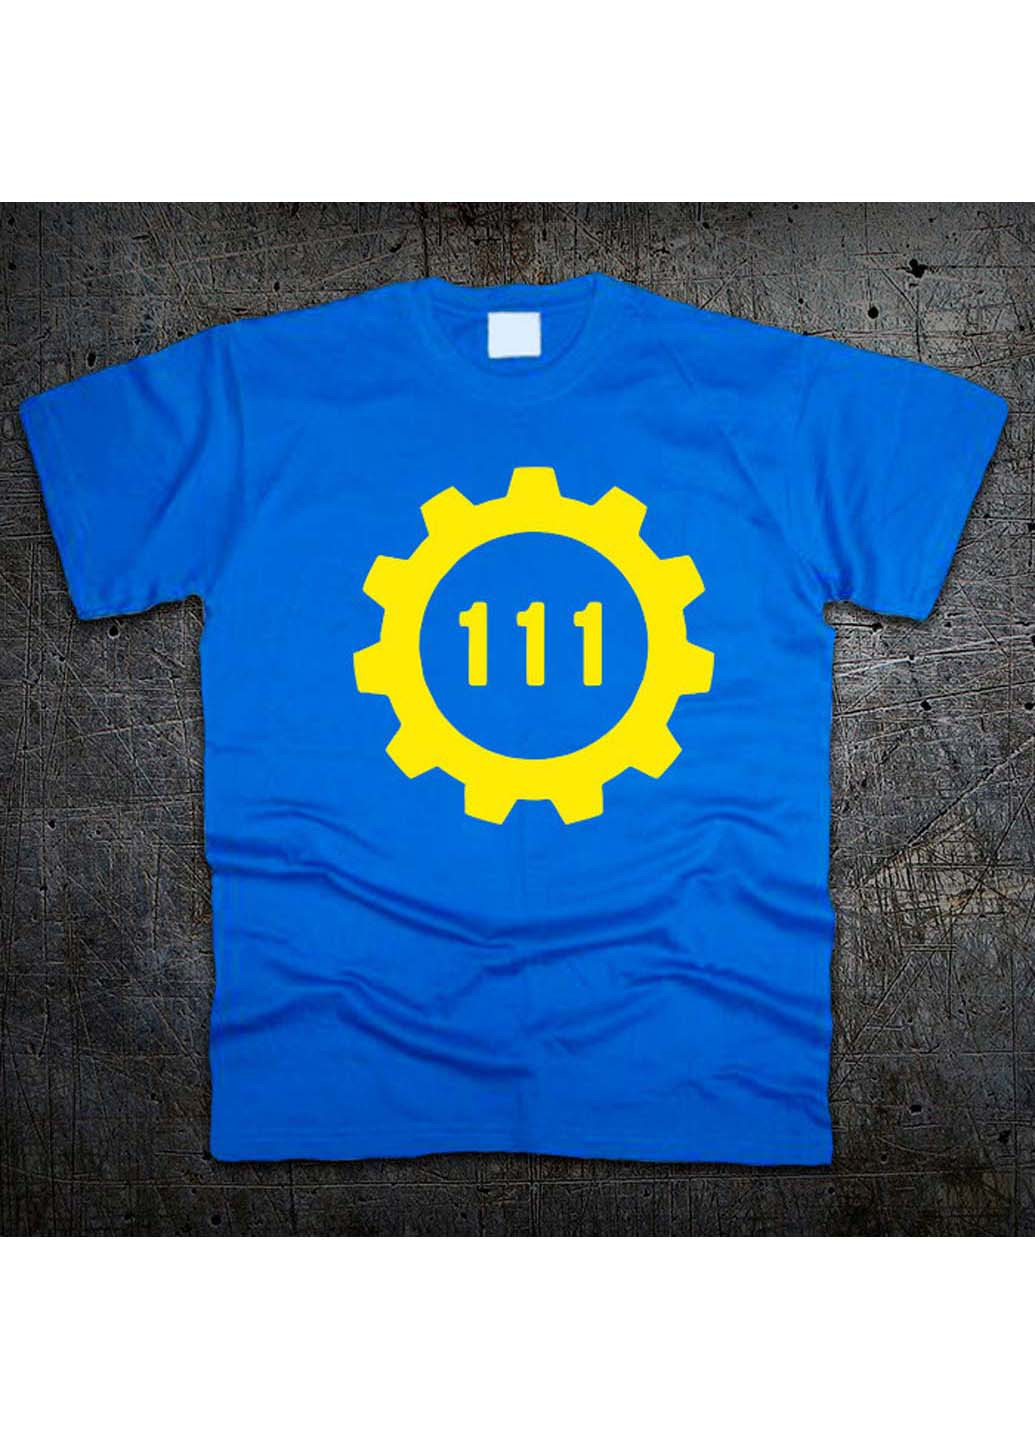 Синяя футболка Fruit of the Loom Убежище 111 Фаллаут Fallout 4